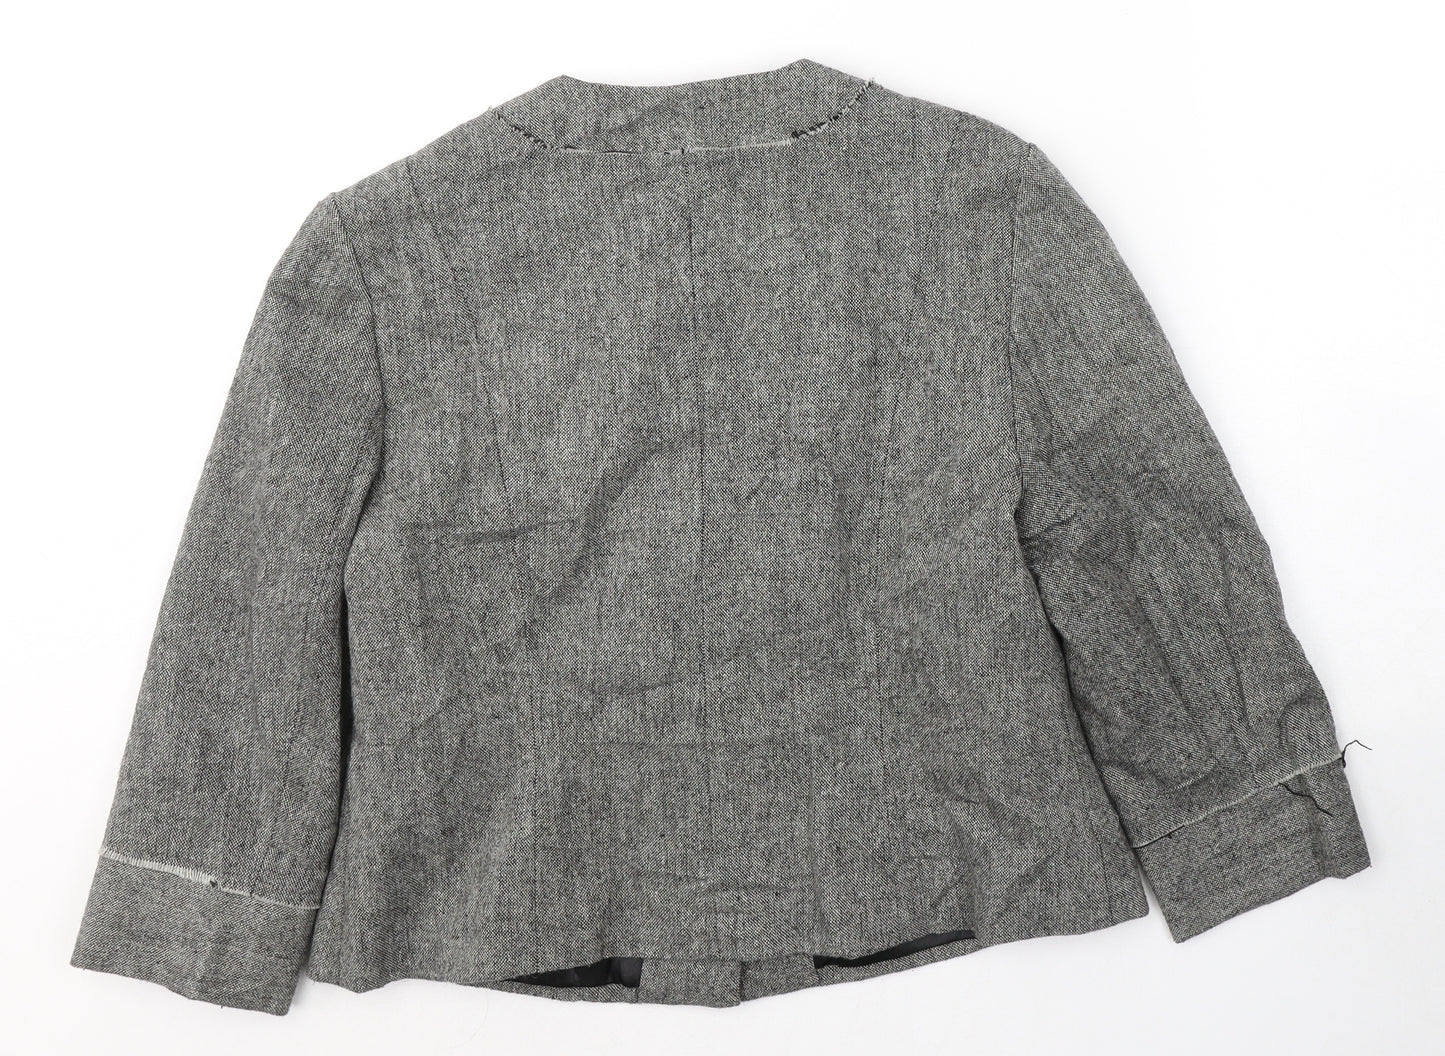 August Silk Womens Black   Jacket Blazer Size 14  Button